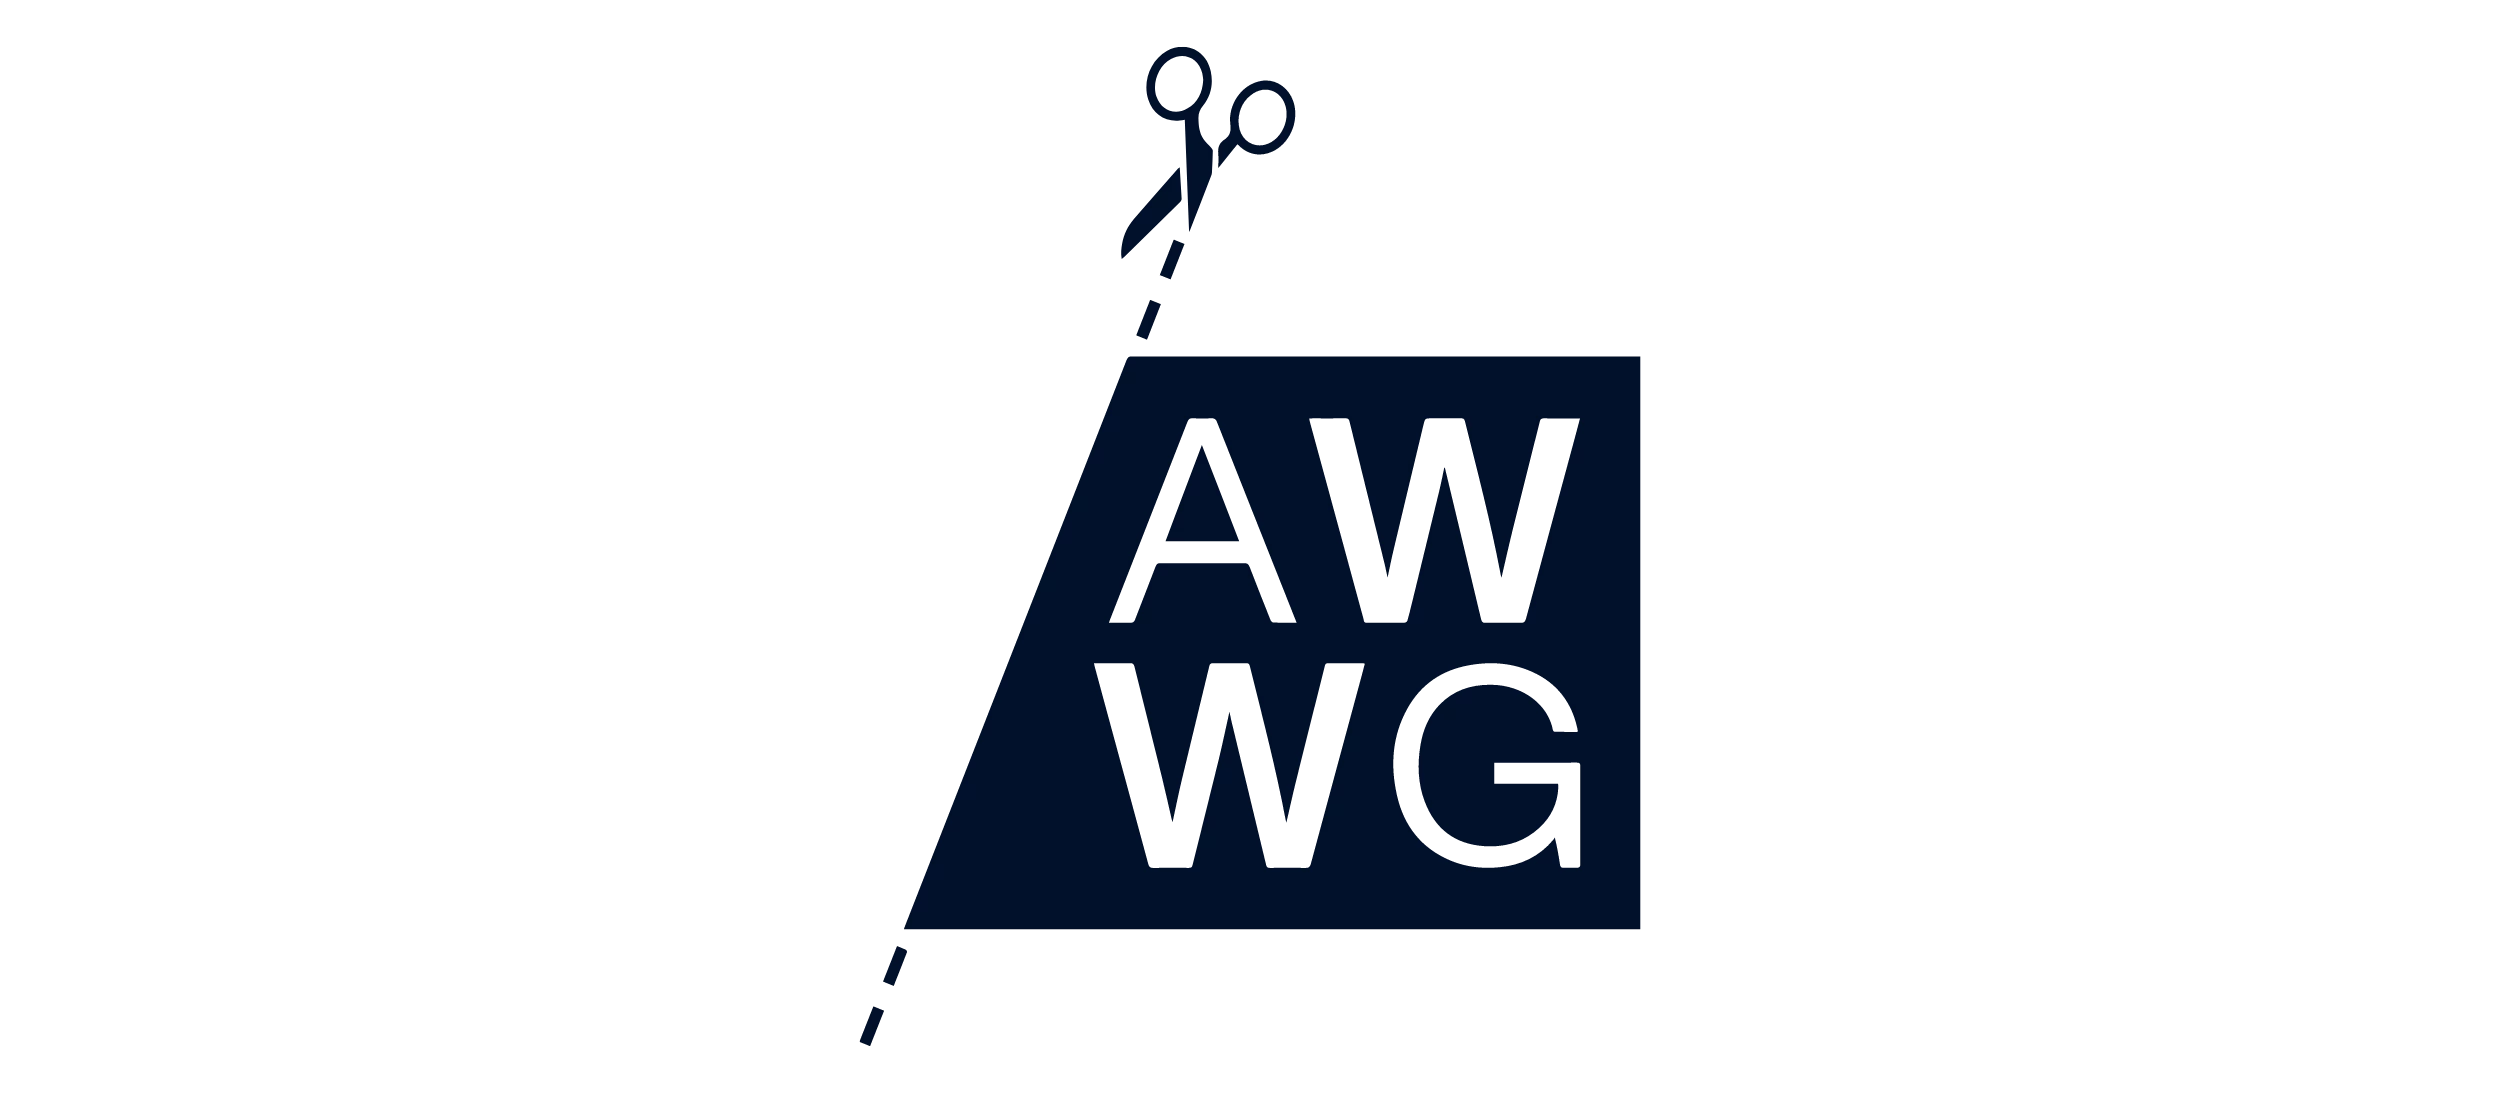 AWWG logo